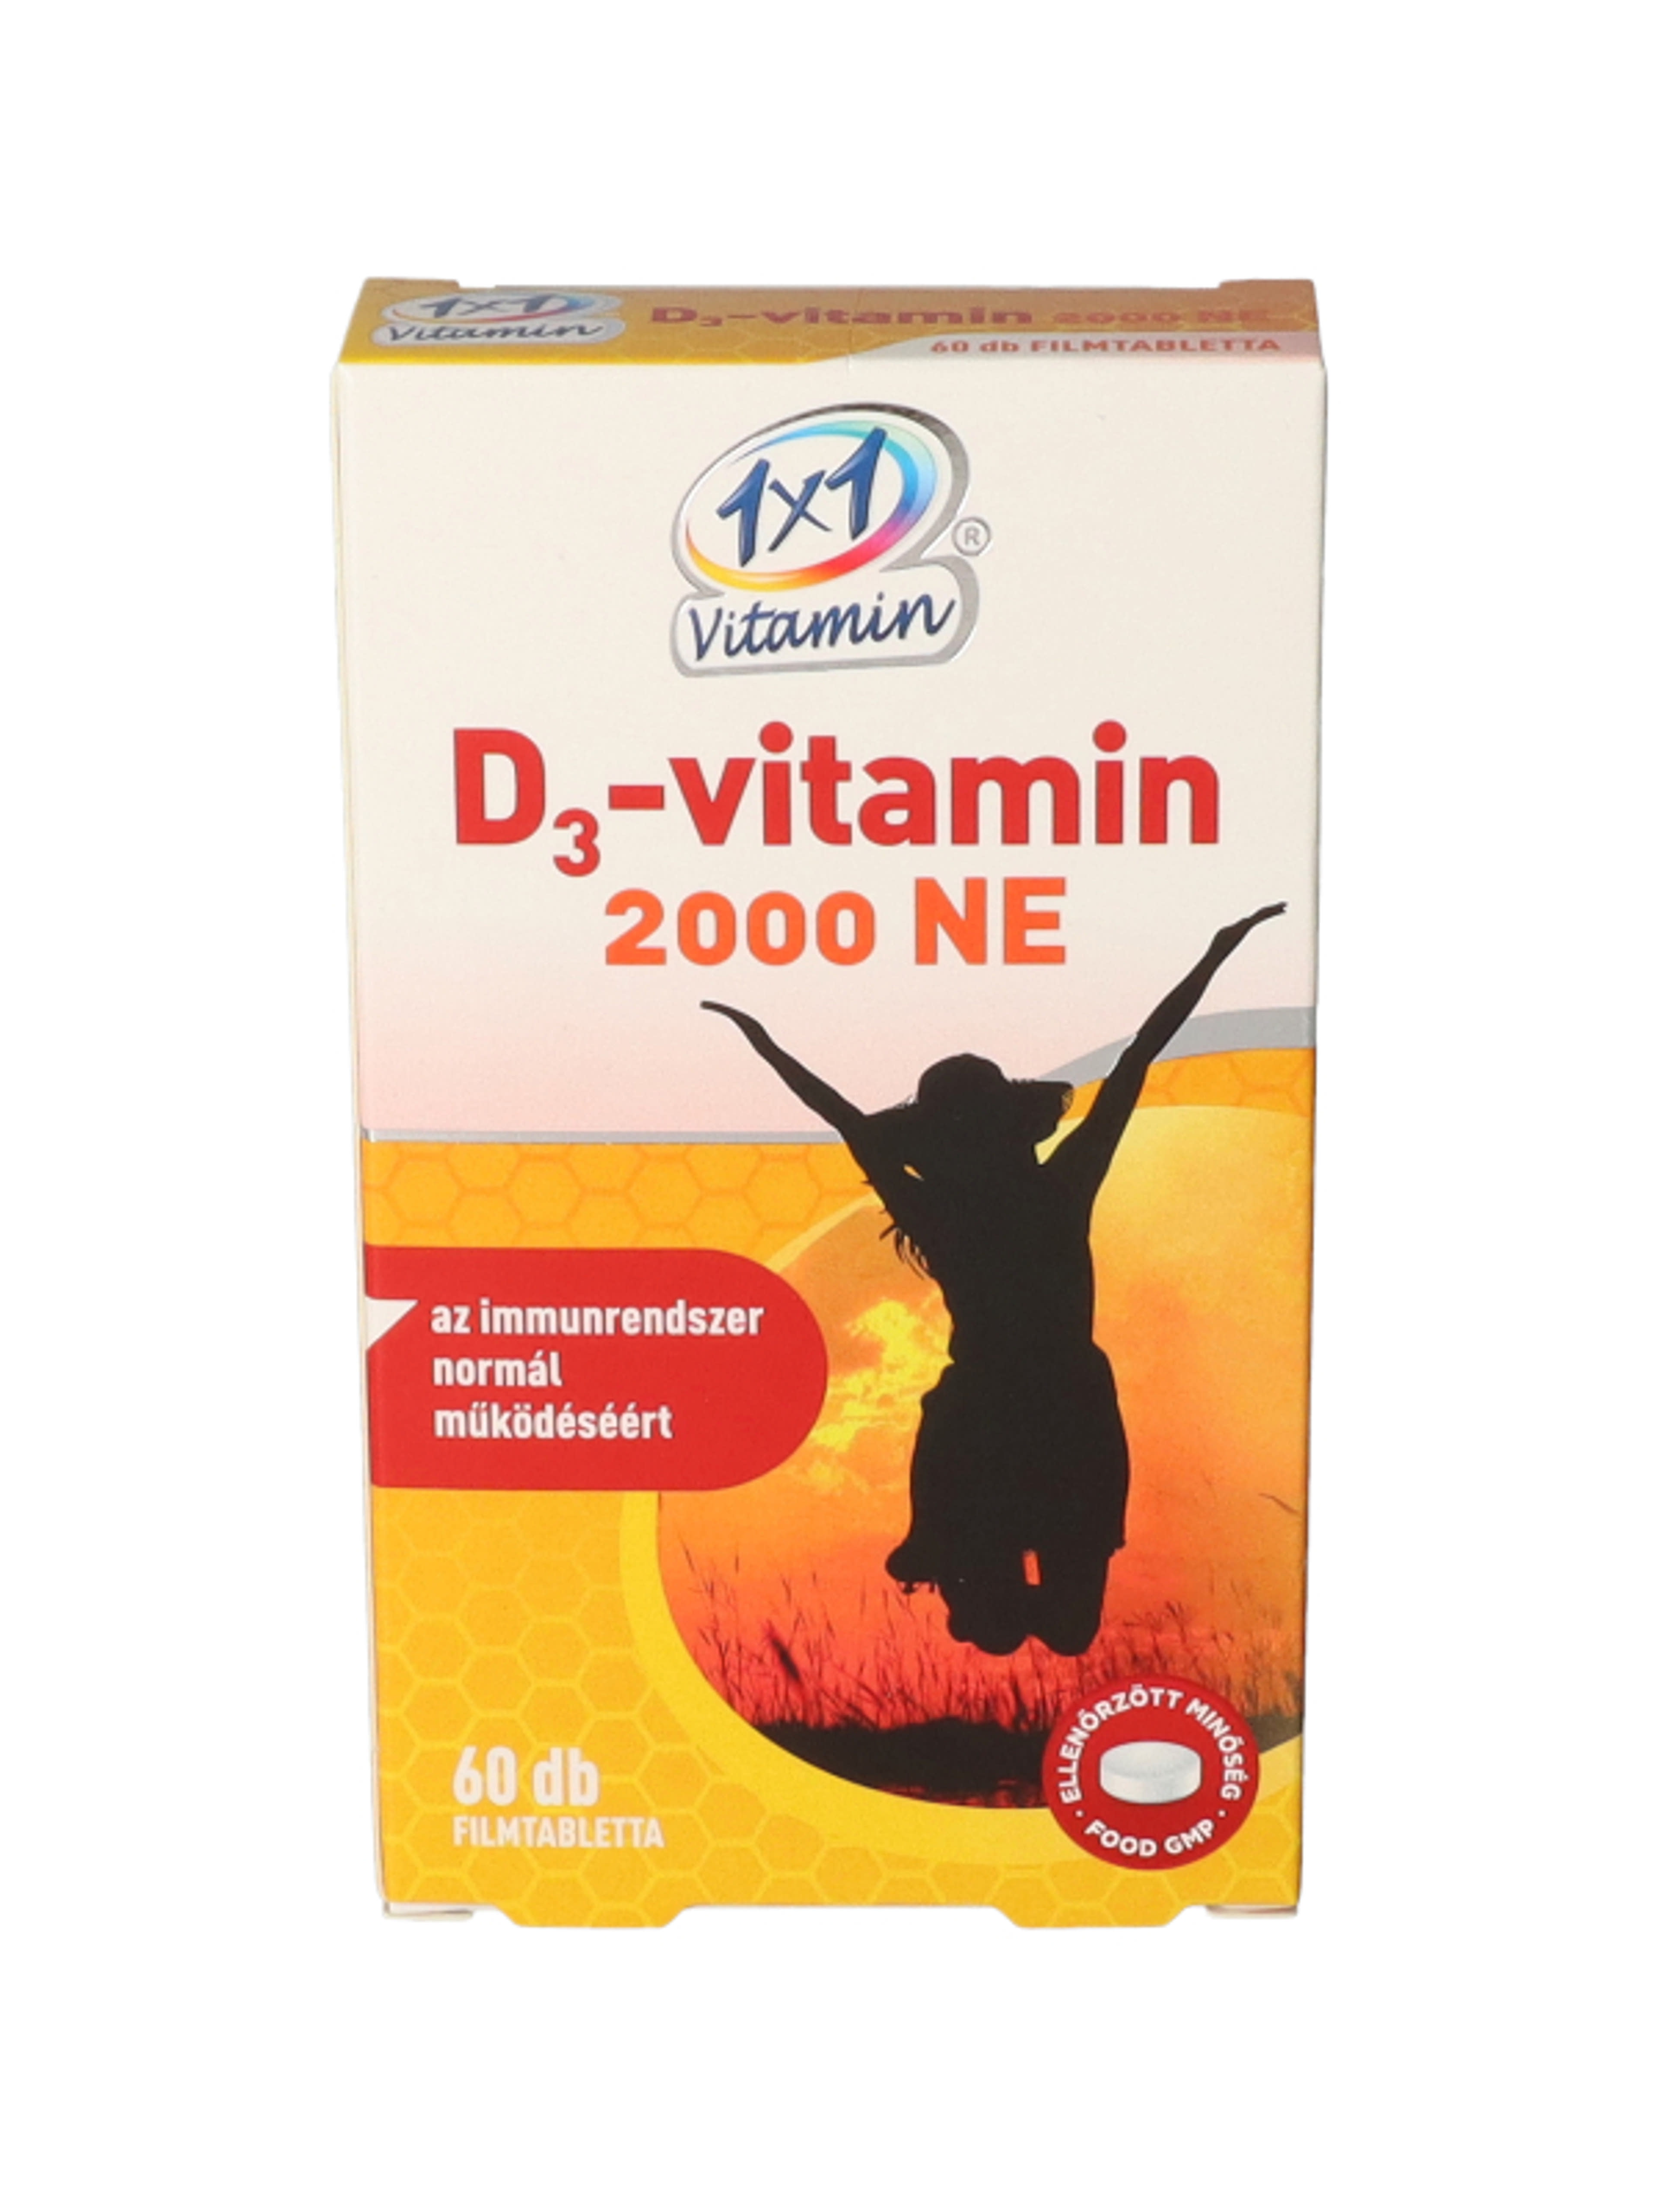 1x1 vitamin D3 2000Ne - 60 db-1